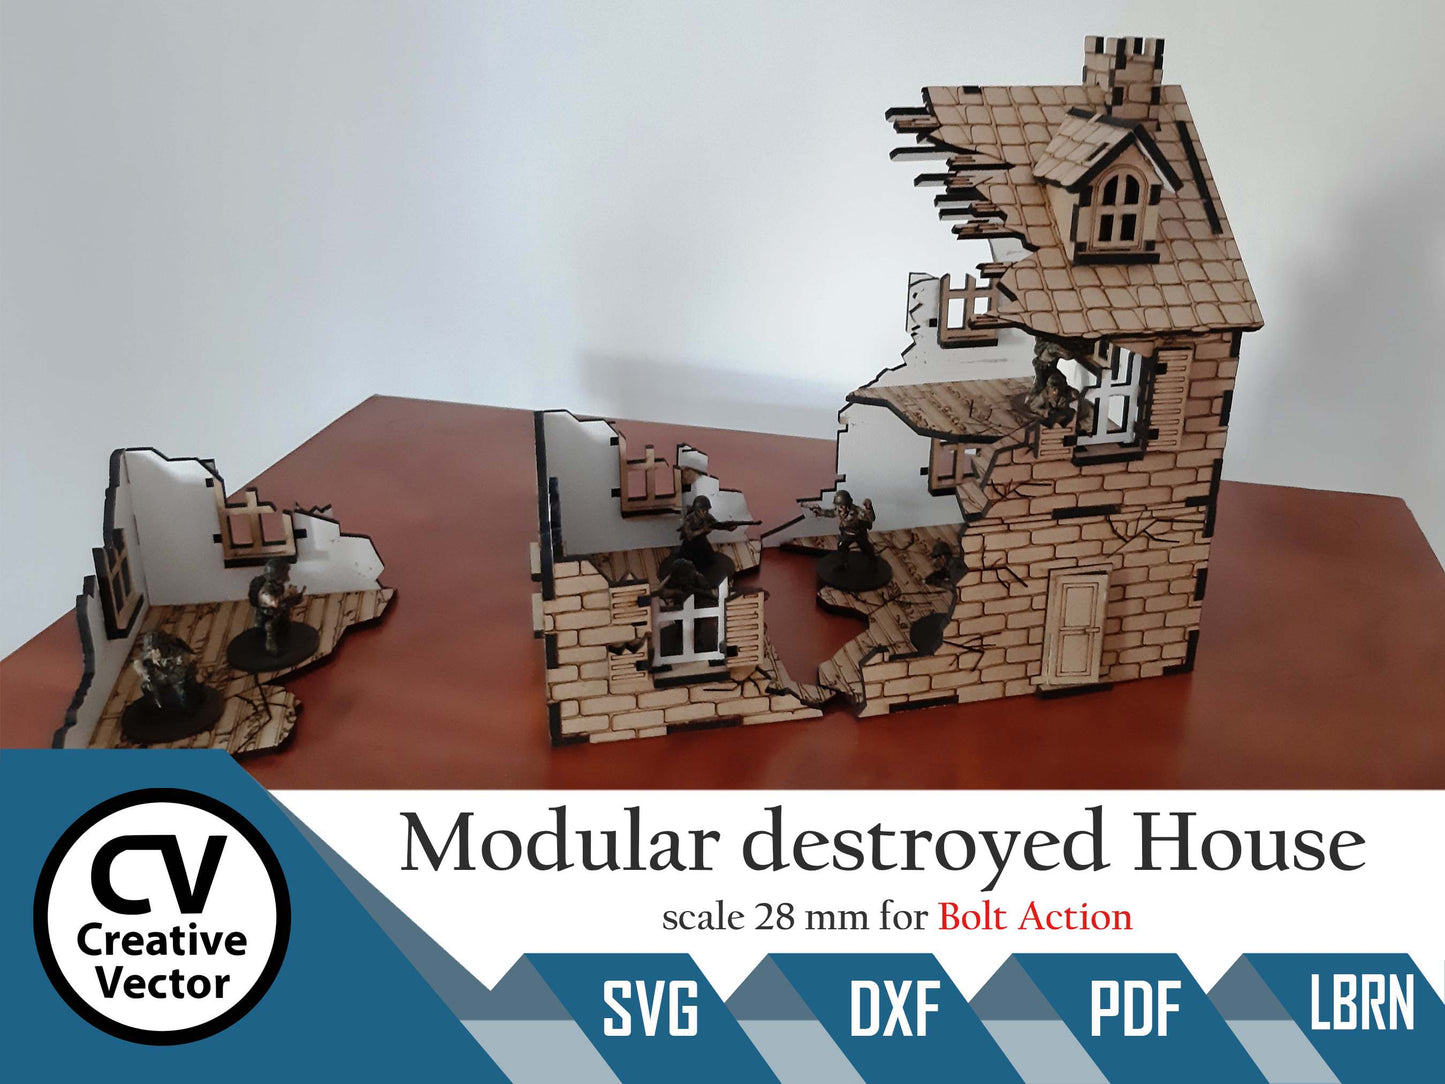 Modulares zerstörtes Haus im Maßstab 28 mm für das Spiel Bolt Action